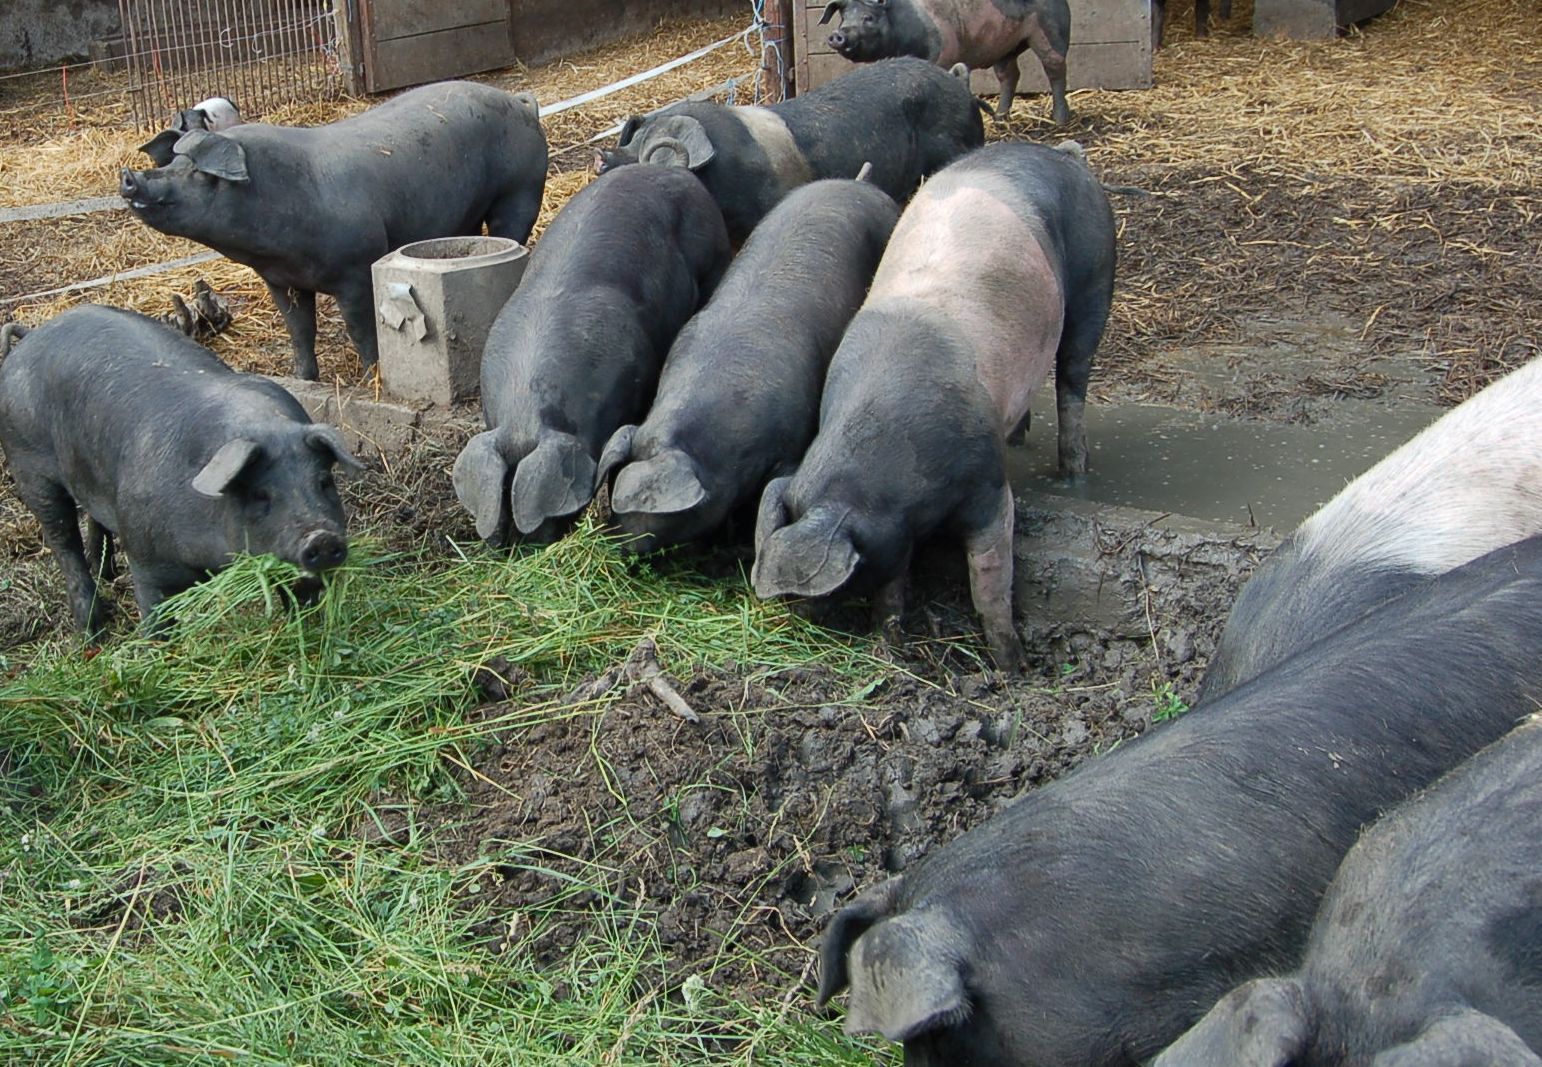 Bioschweine grünfutter sonja wlcek.jpg